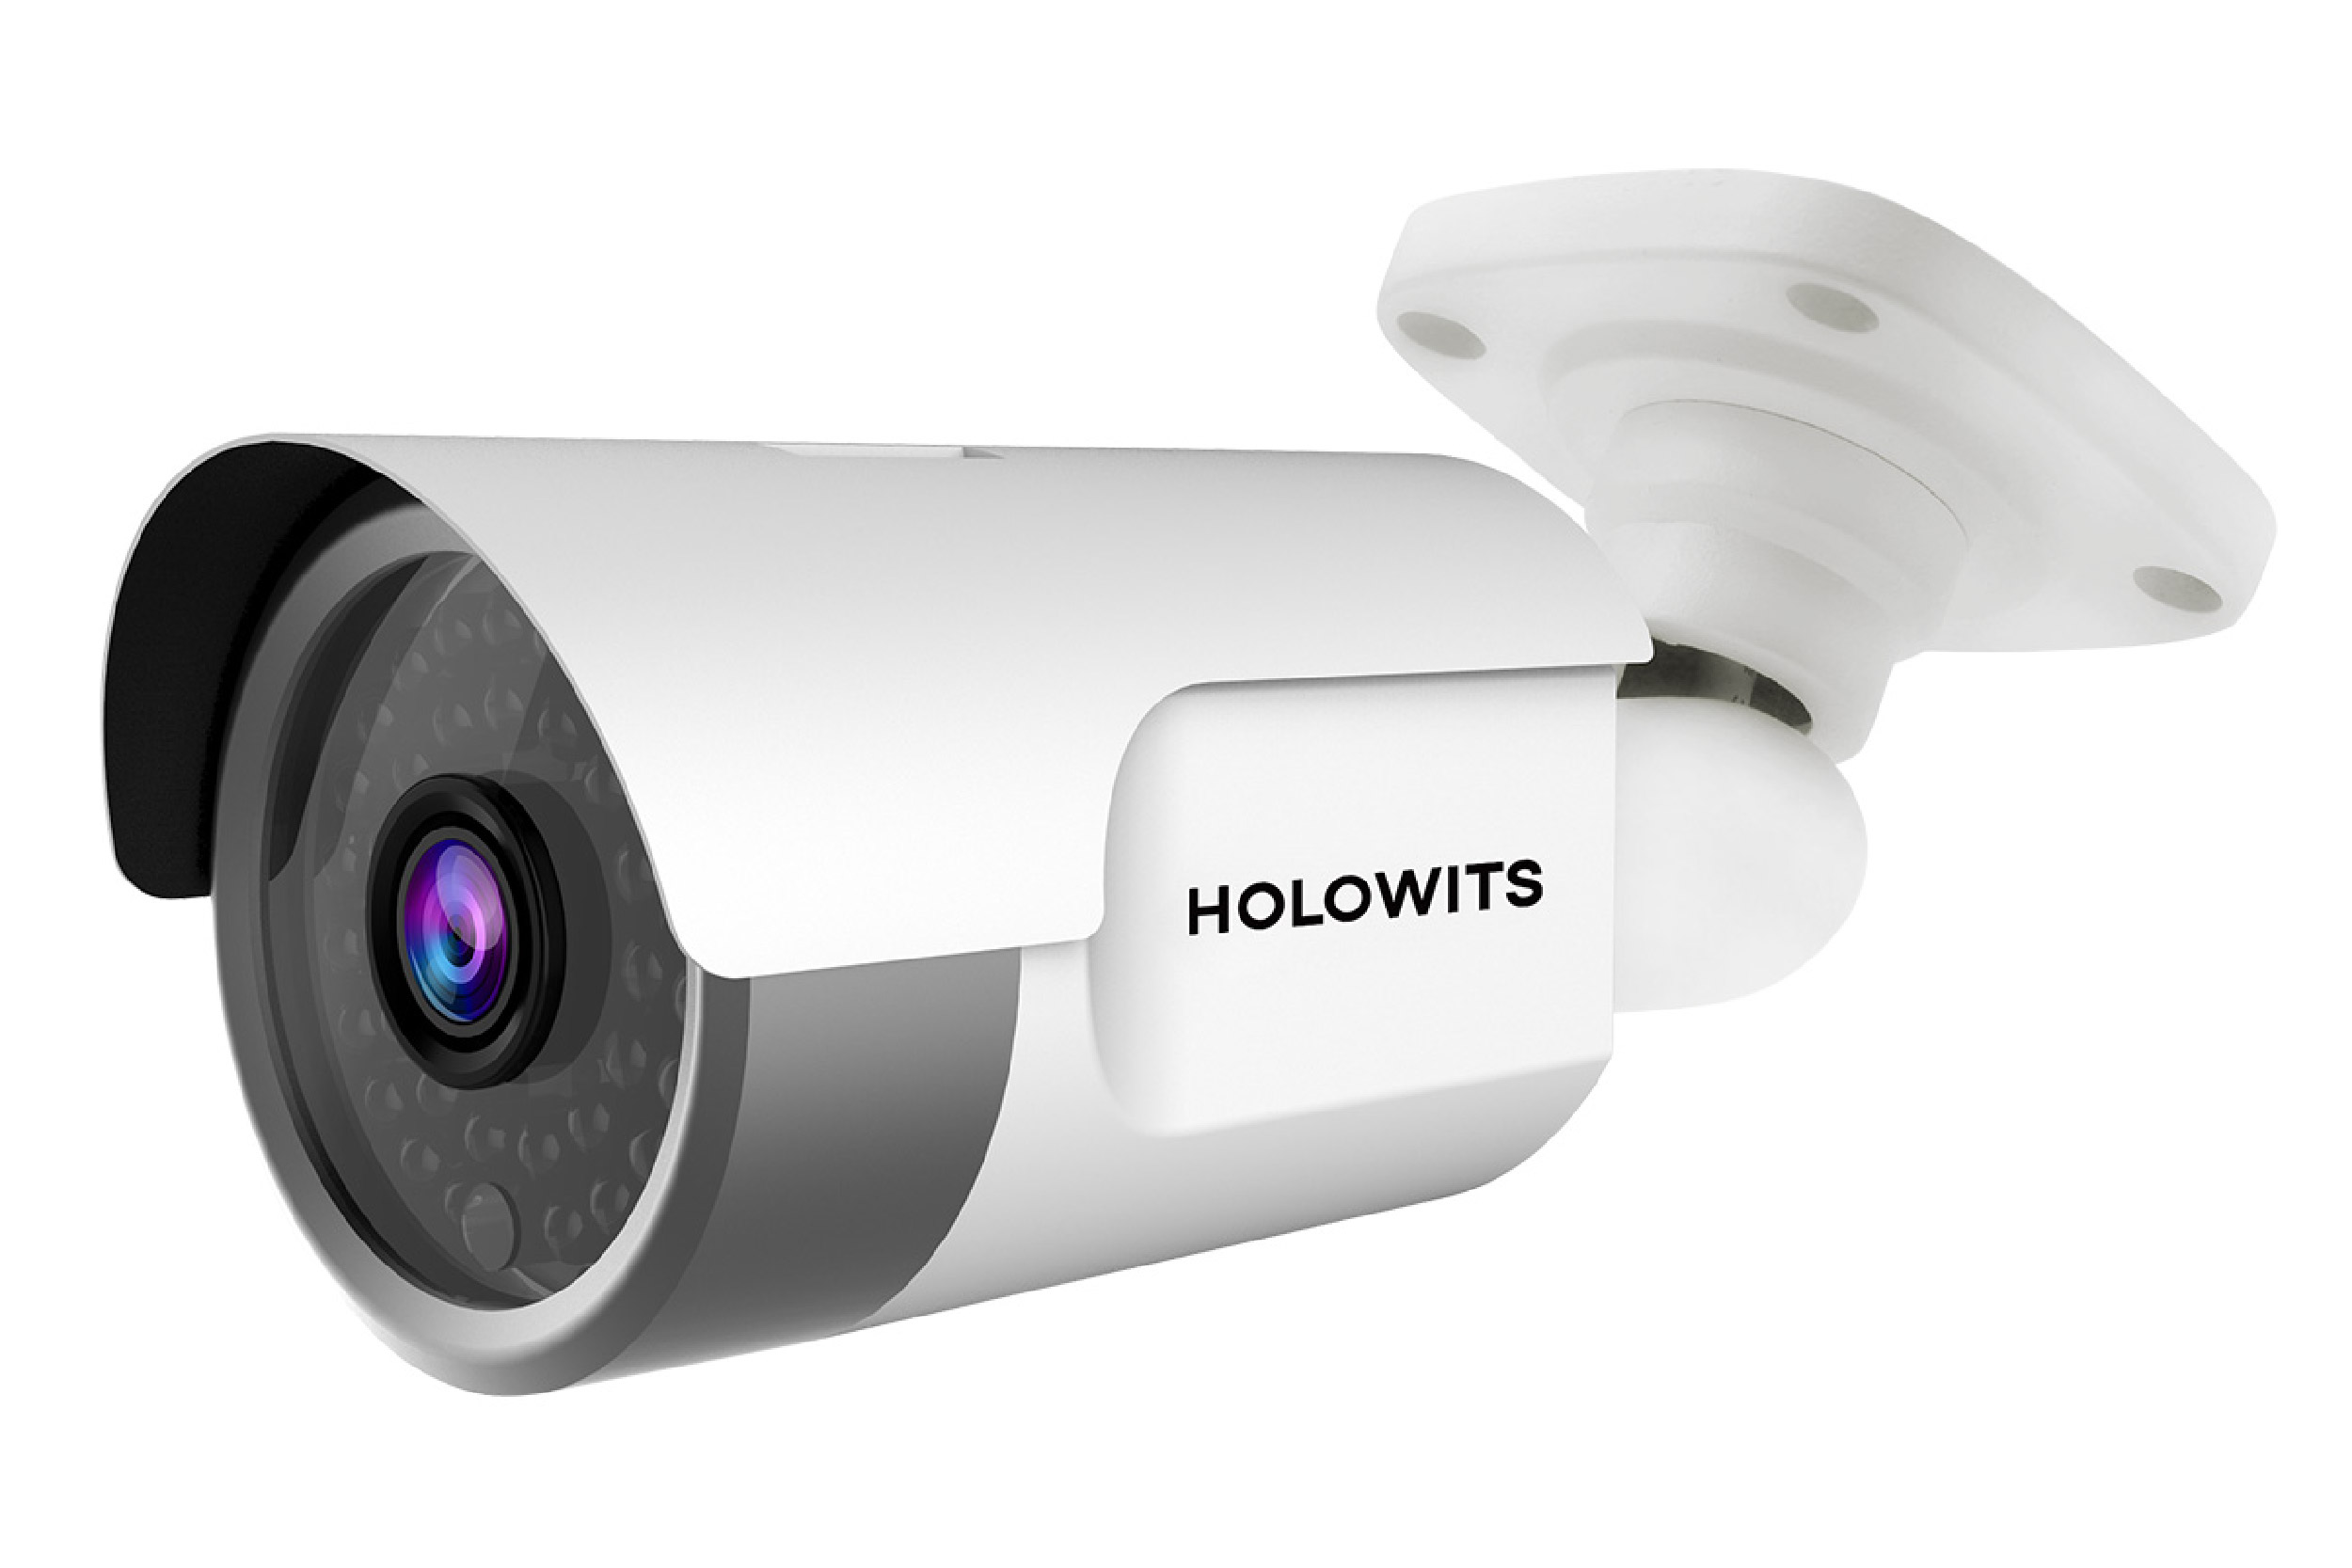 กล้องวงจรปิด HOLOWITS รุ่น HWT-E2030-00-I-P IR Bullet Camera